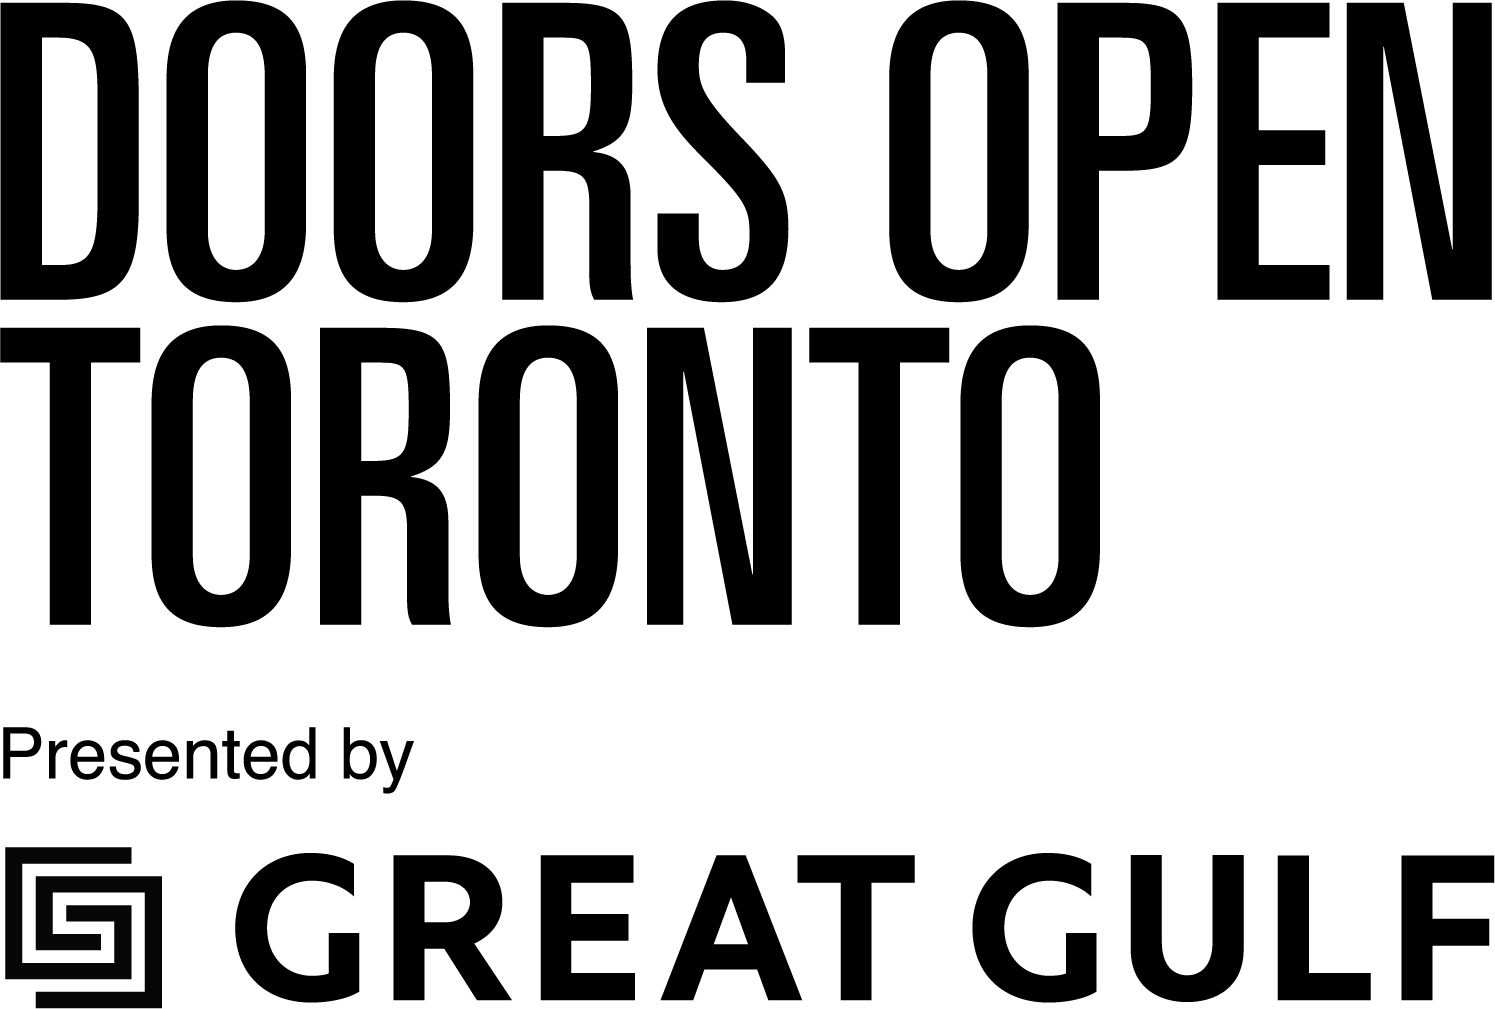 Doors Open Logo